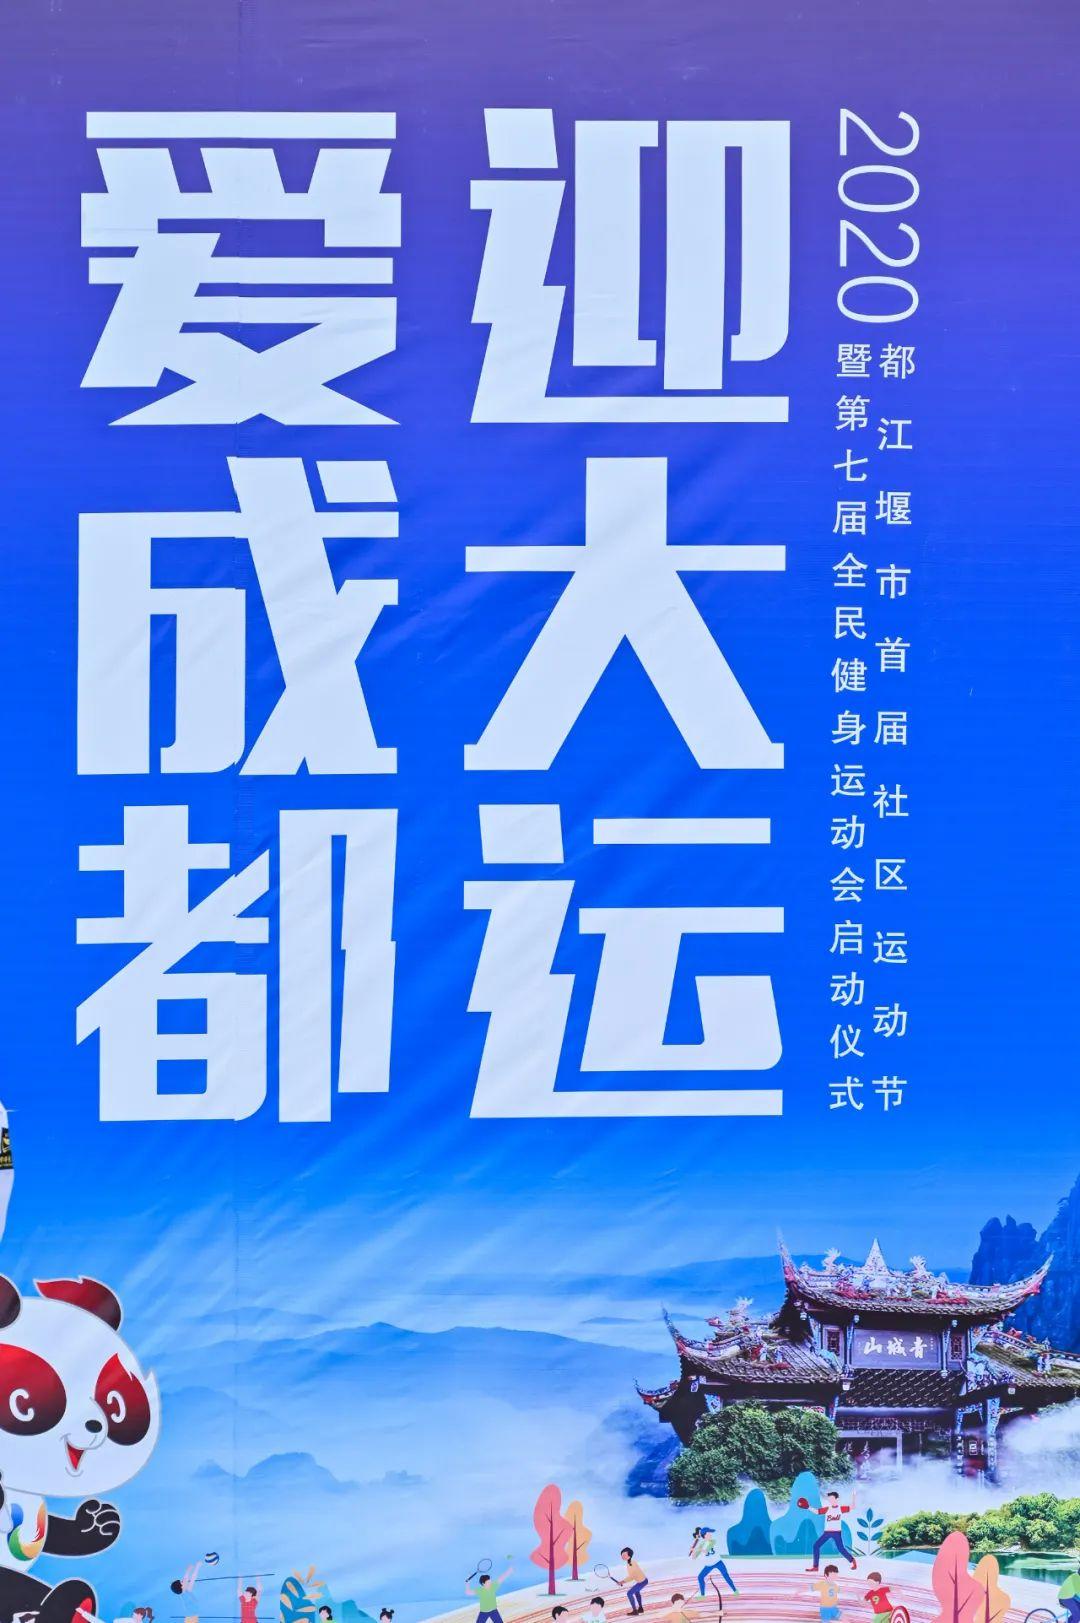 爱成都·迎大运都江堰市首届社区运动节暨第七届全民健身运动会正式